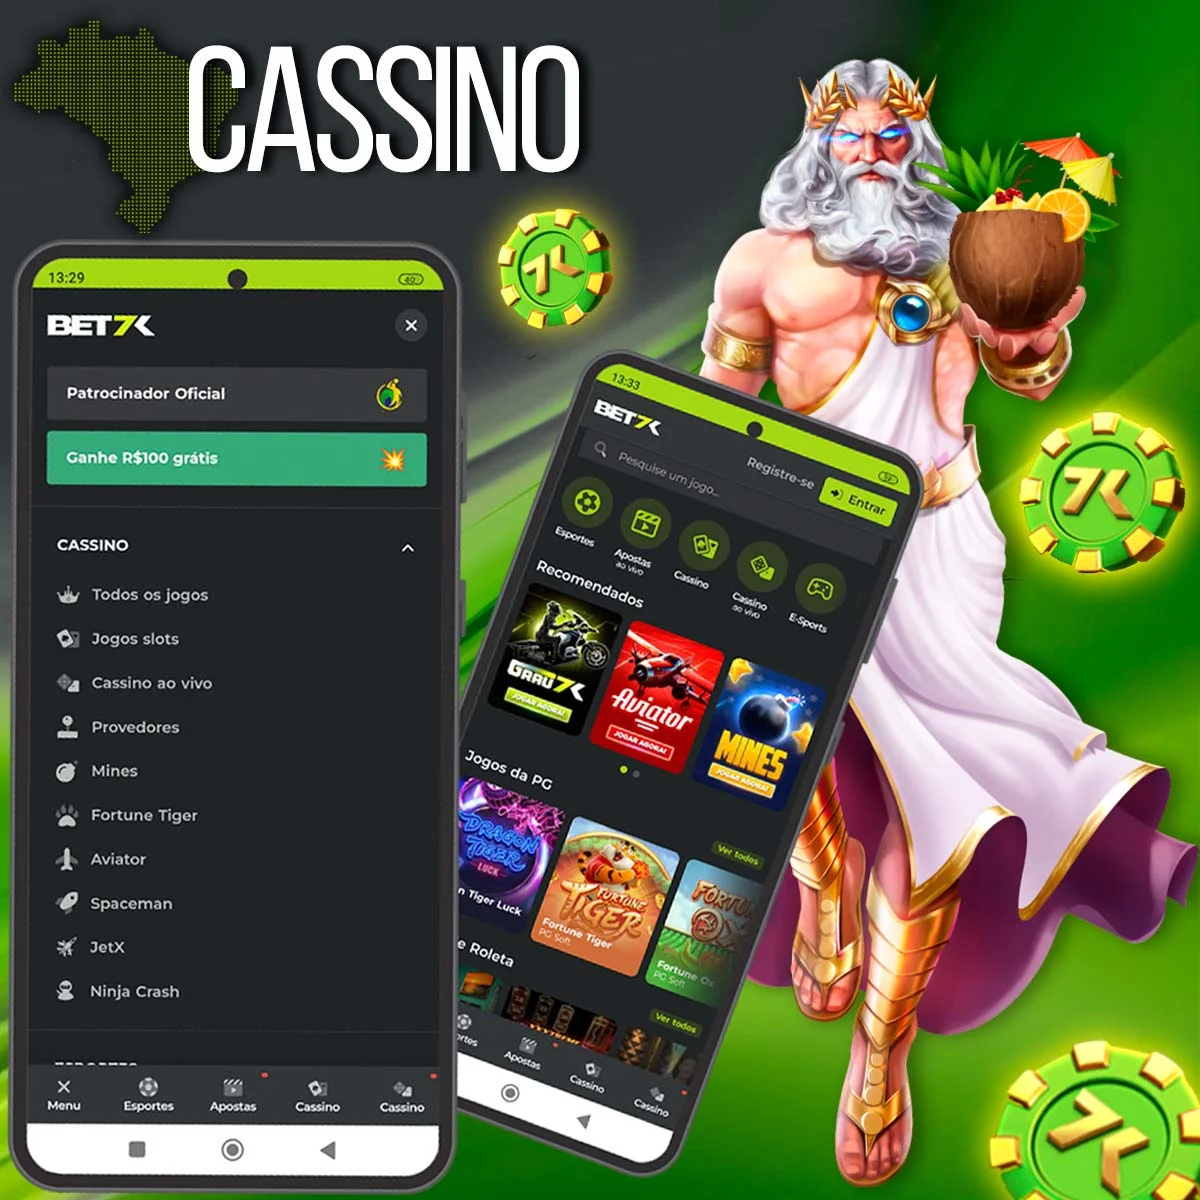 Variedade de jogos no Bet7k Casino no Brasil